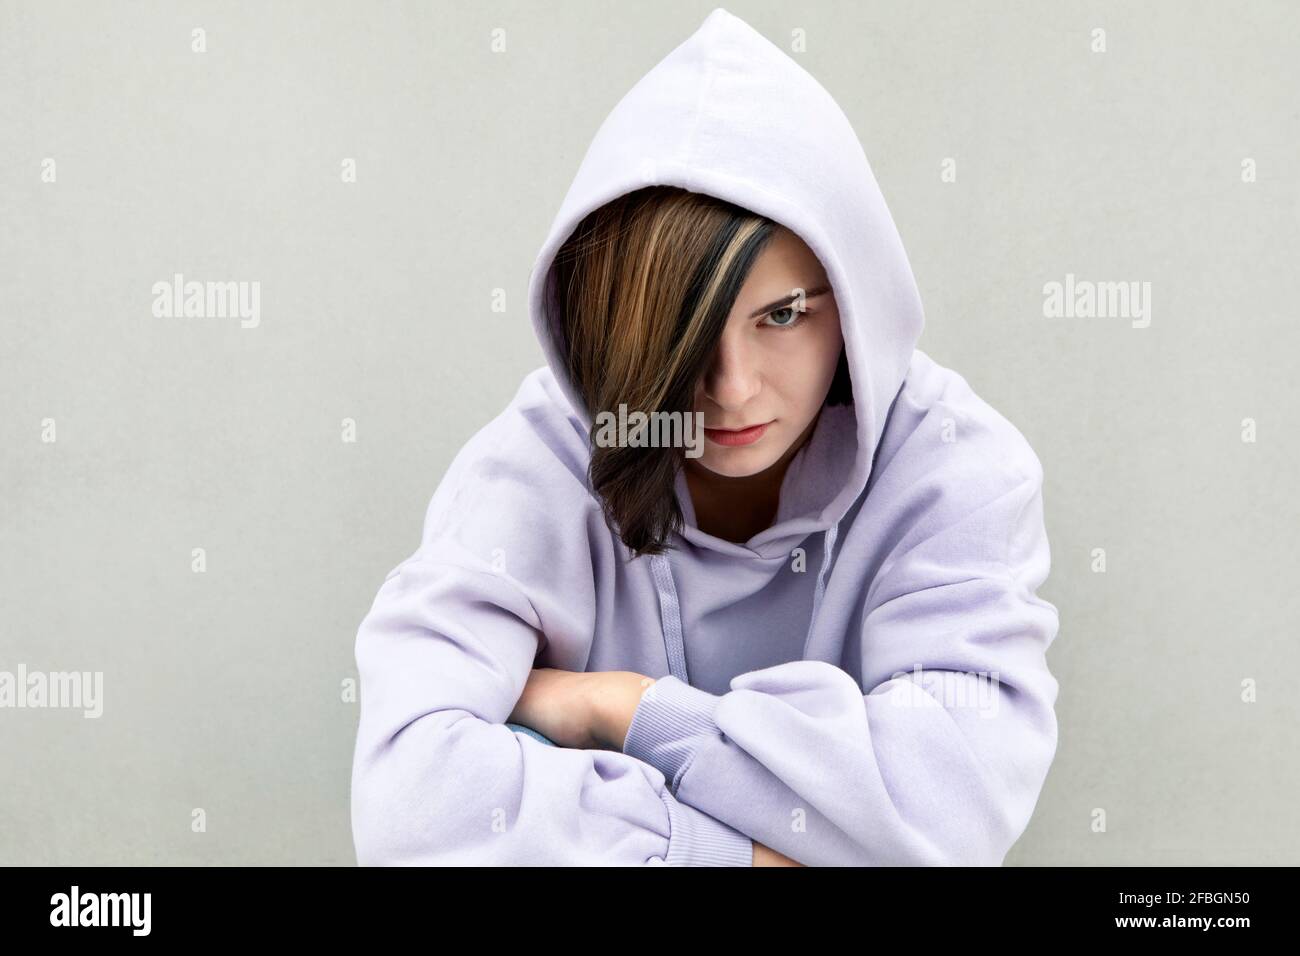 Serious Mädchen mit hervorgehobenen Haaren starrte durch graue Wand Stockfoto